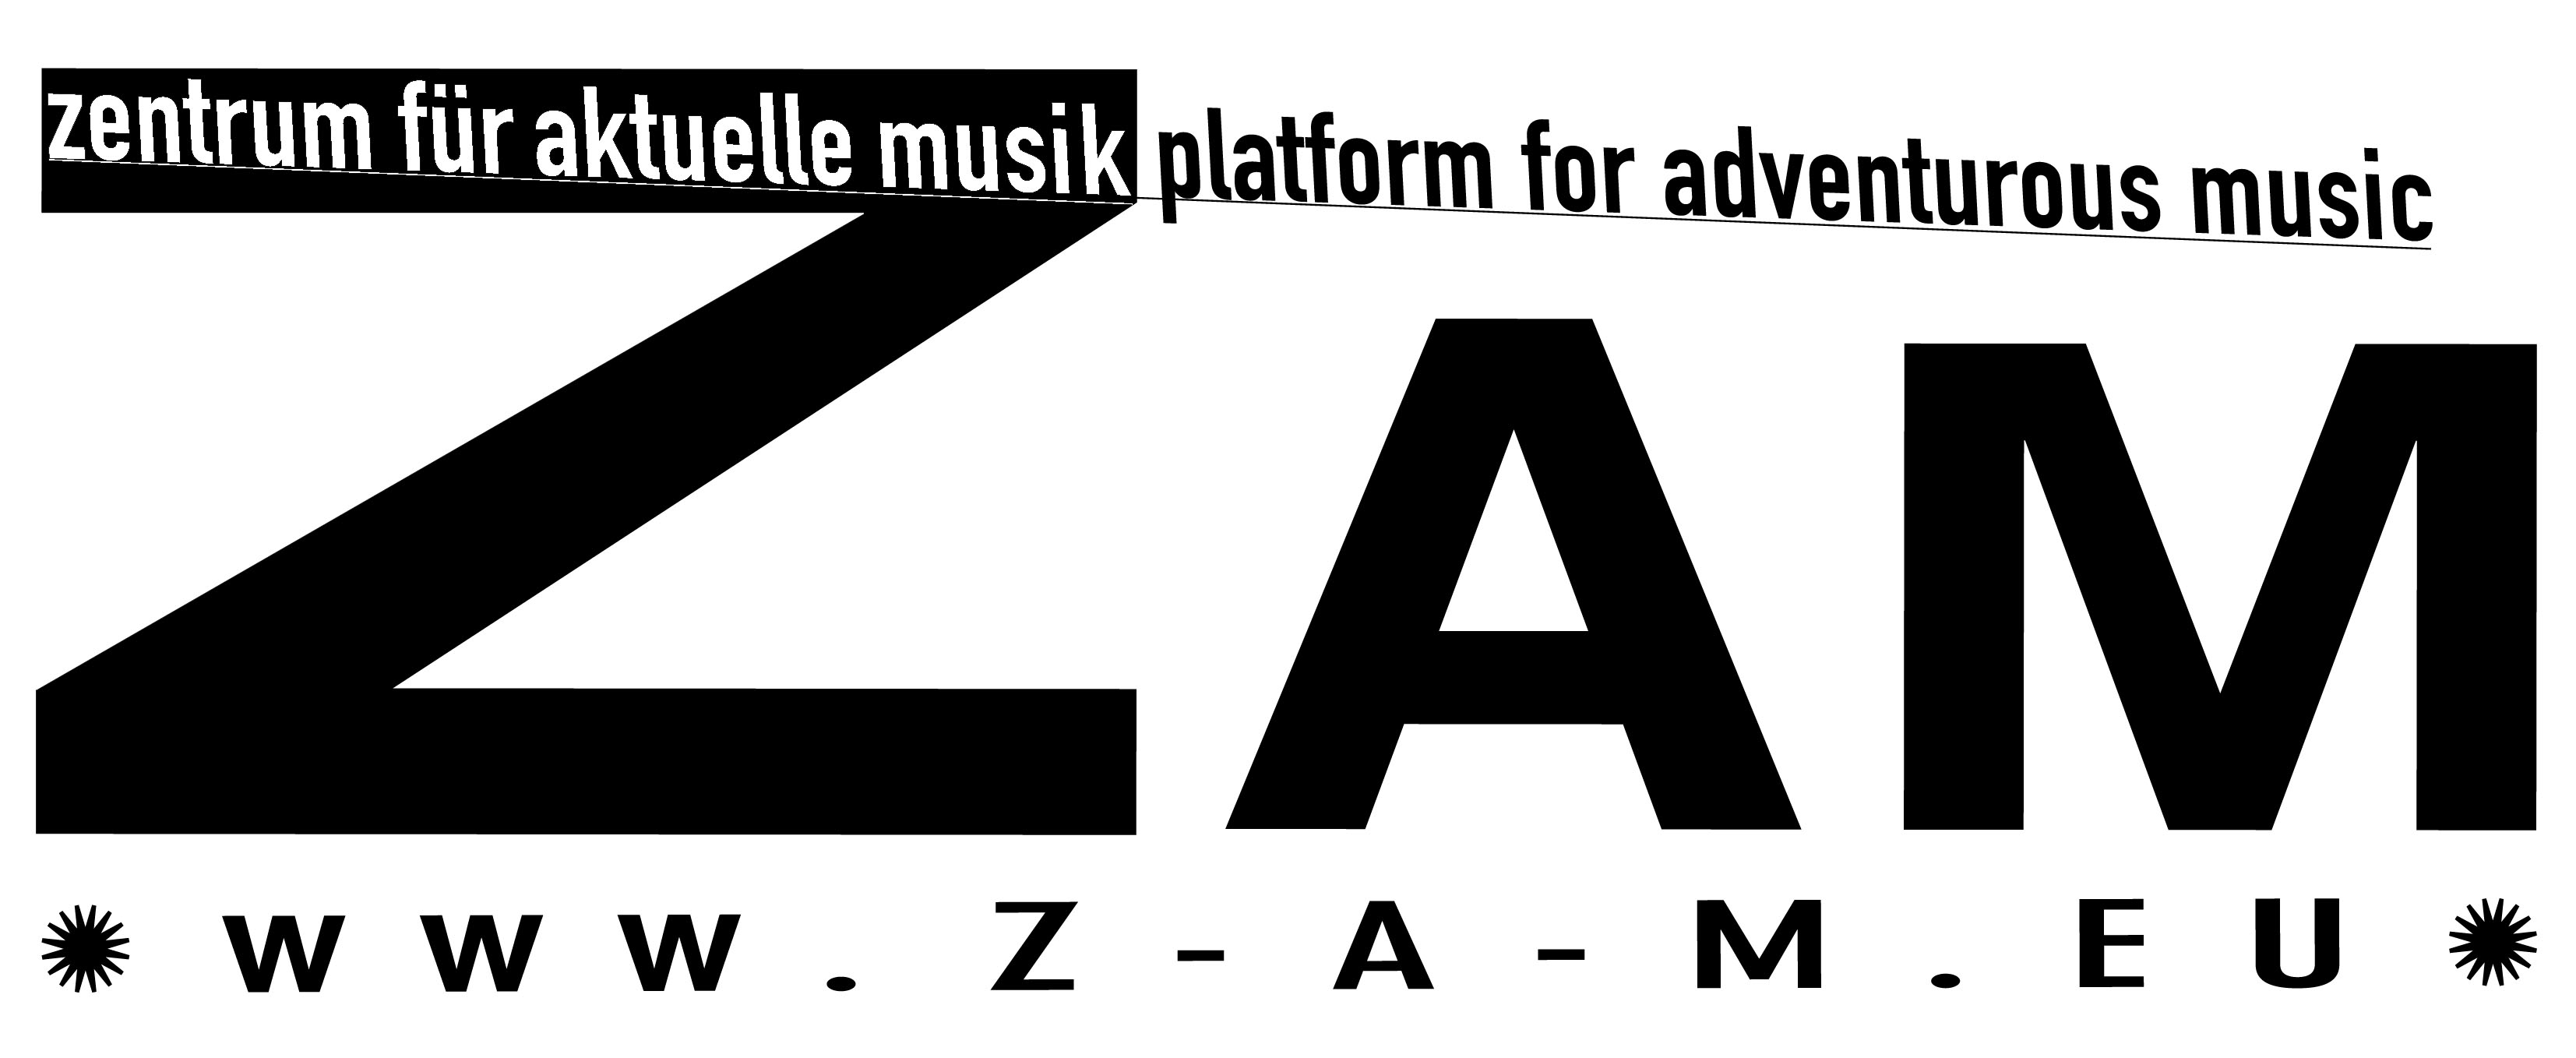 ZAM_logo28.jpg